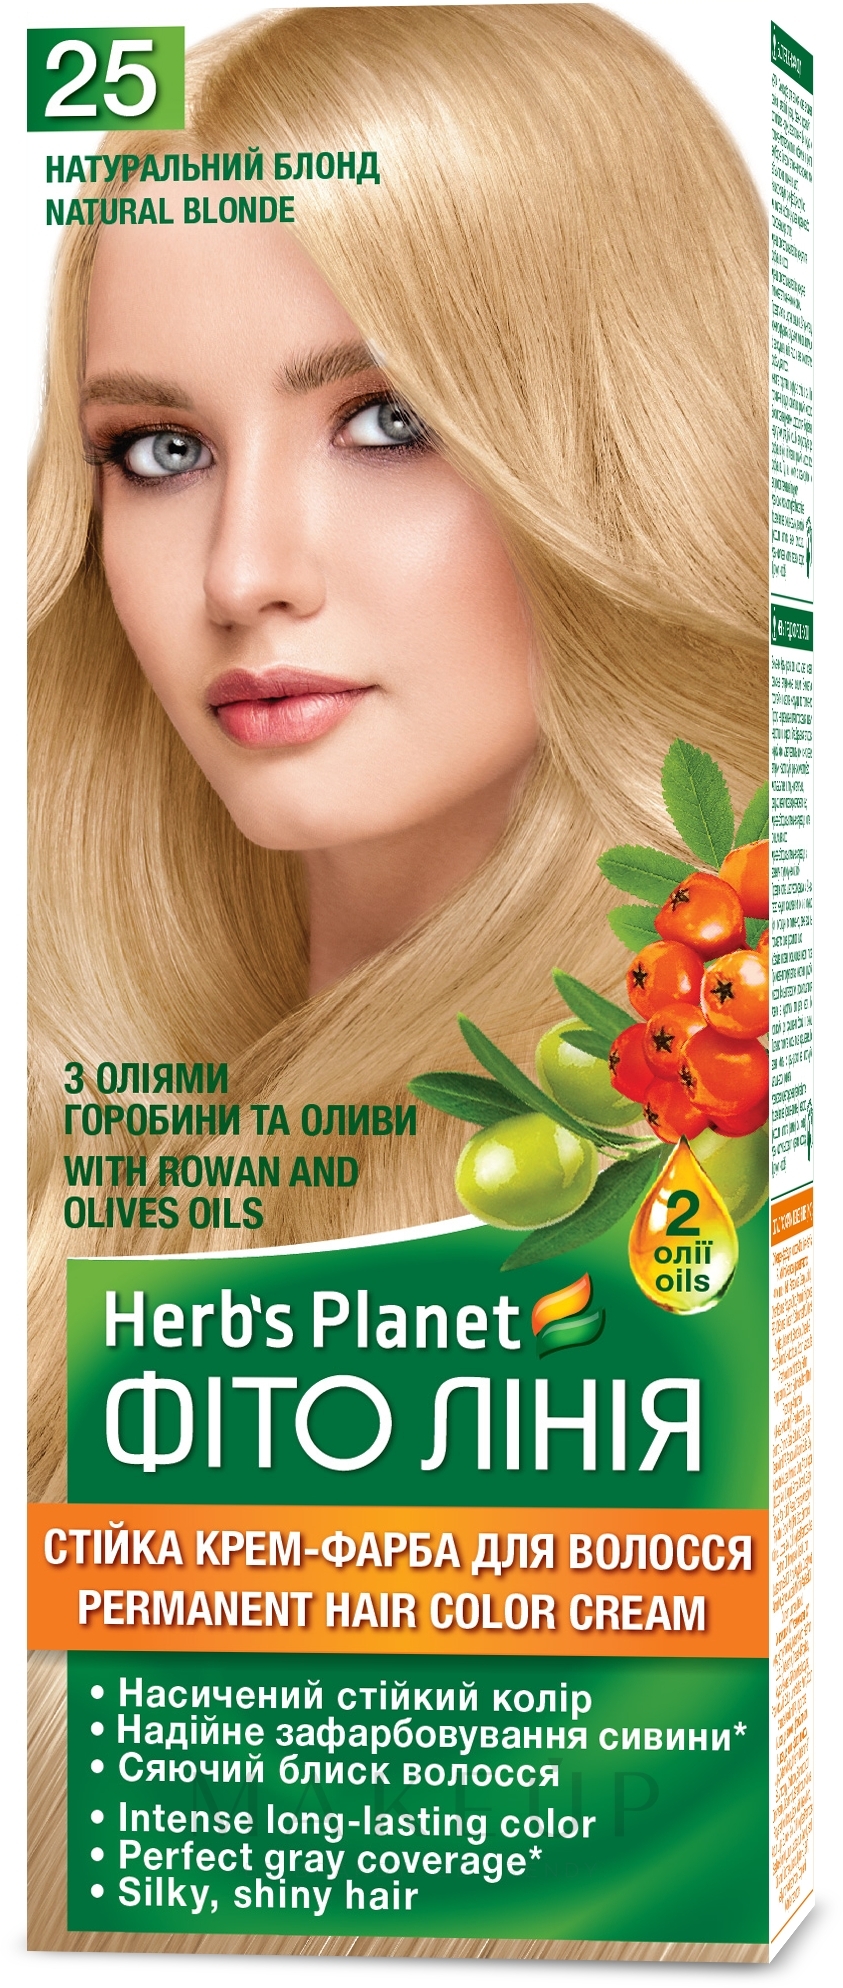 Permanente Creme-Haarfarbe - Supermash  — Bild 25 - Natürliches Blond